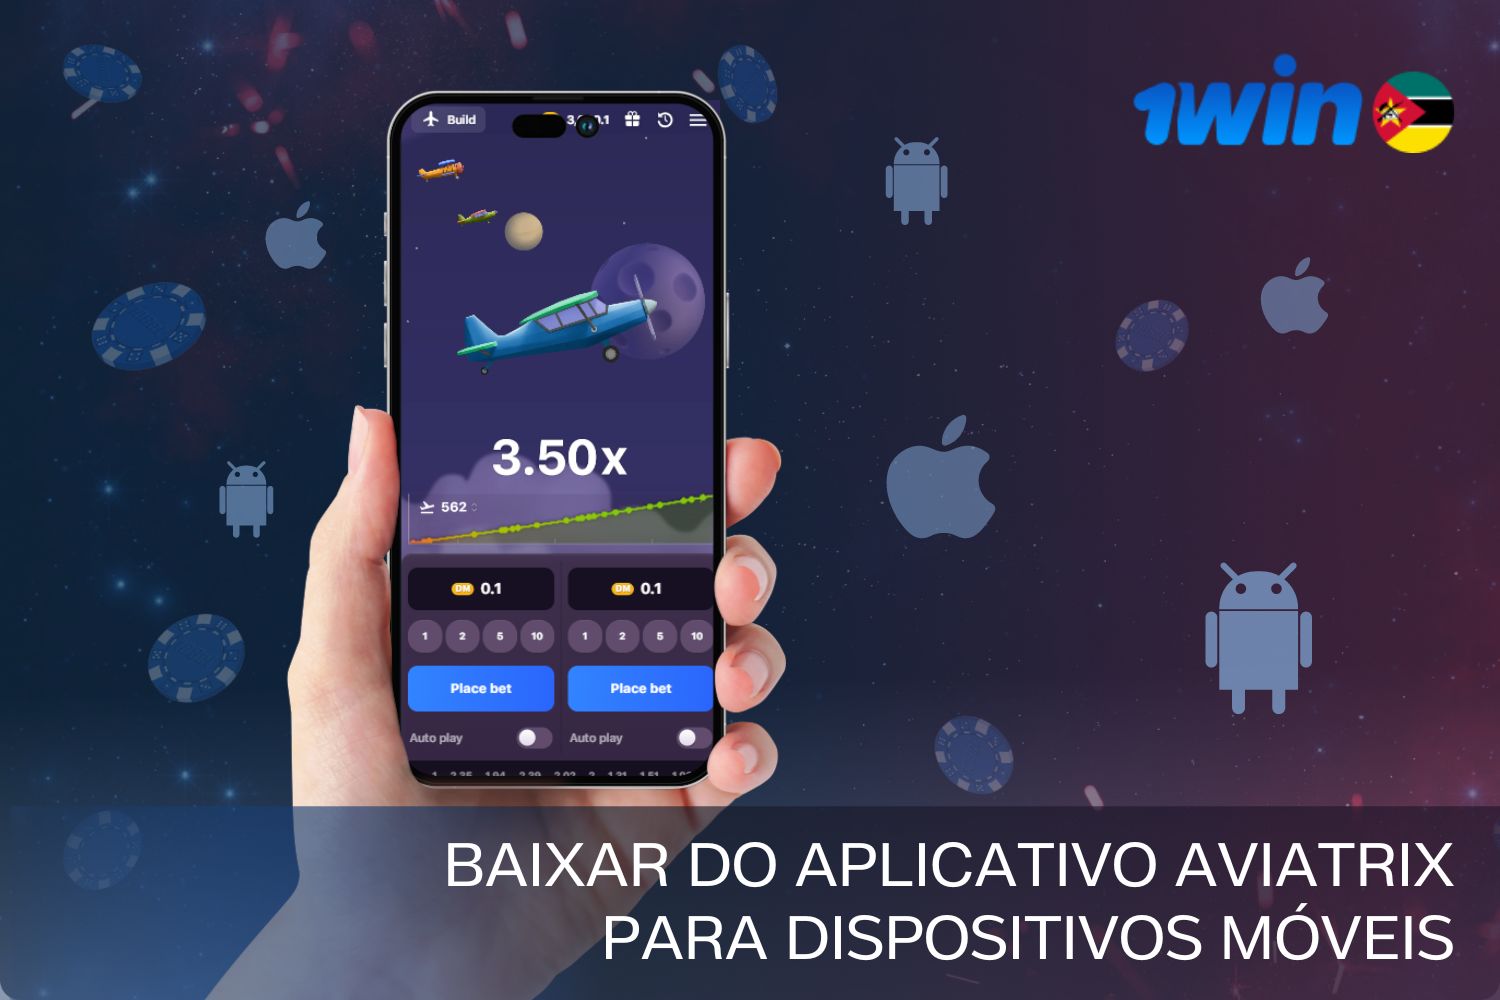 Os jogadores de Moçambique podem começar a jogar a dinheiro real no seu smartphone, descarregando a aplicação gratuita 1win Aviatrix para Android ou iOS.